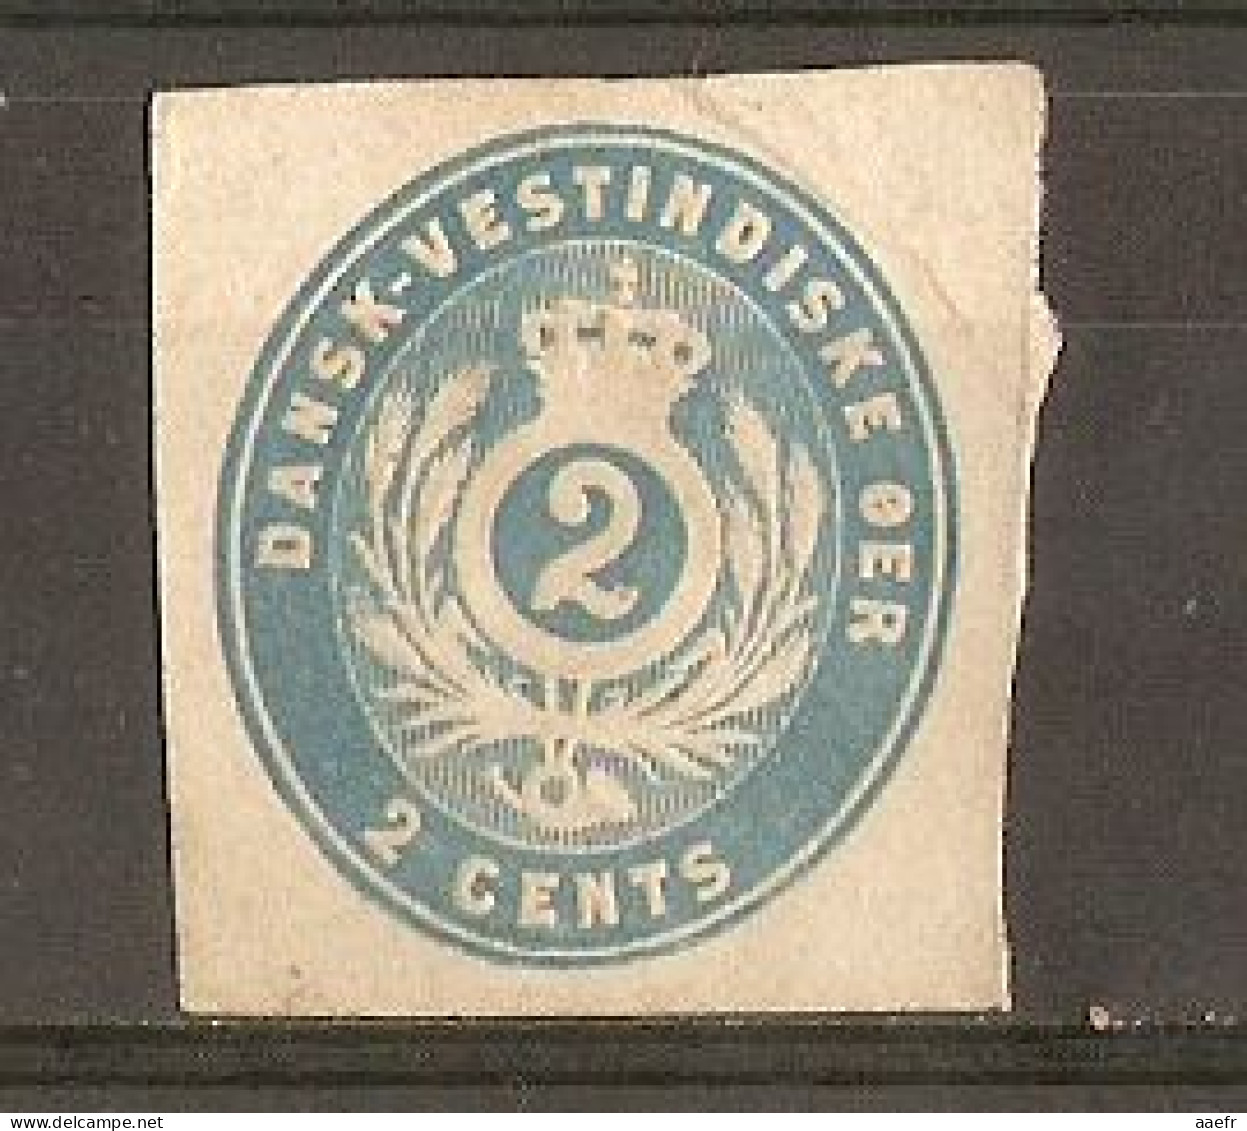 Danemark 1878 - Danish West Indies - Dansk-Vestindiske OER - 2 Cents Light Blue - Postal Stationery Cut - Fragment EP - Denmark (West Indies)